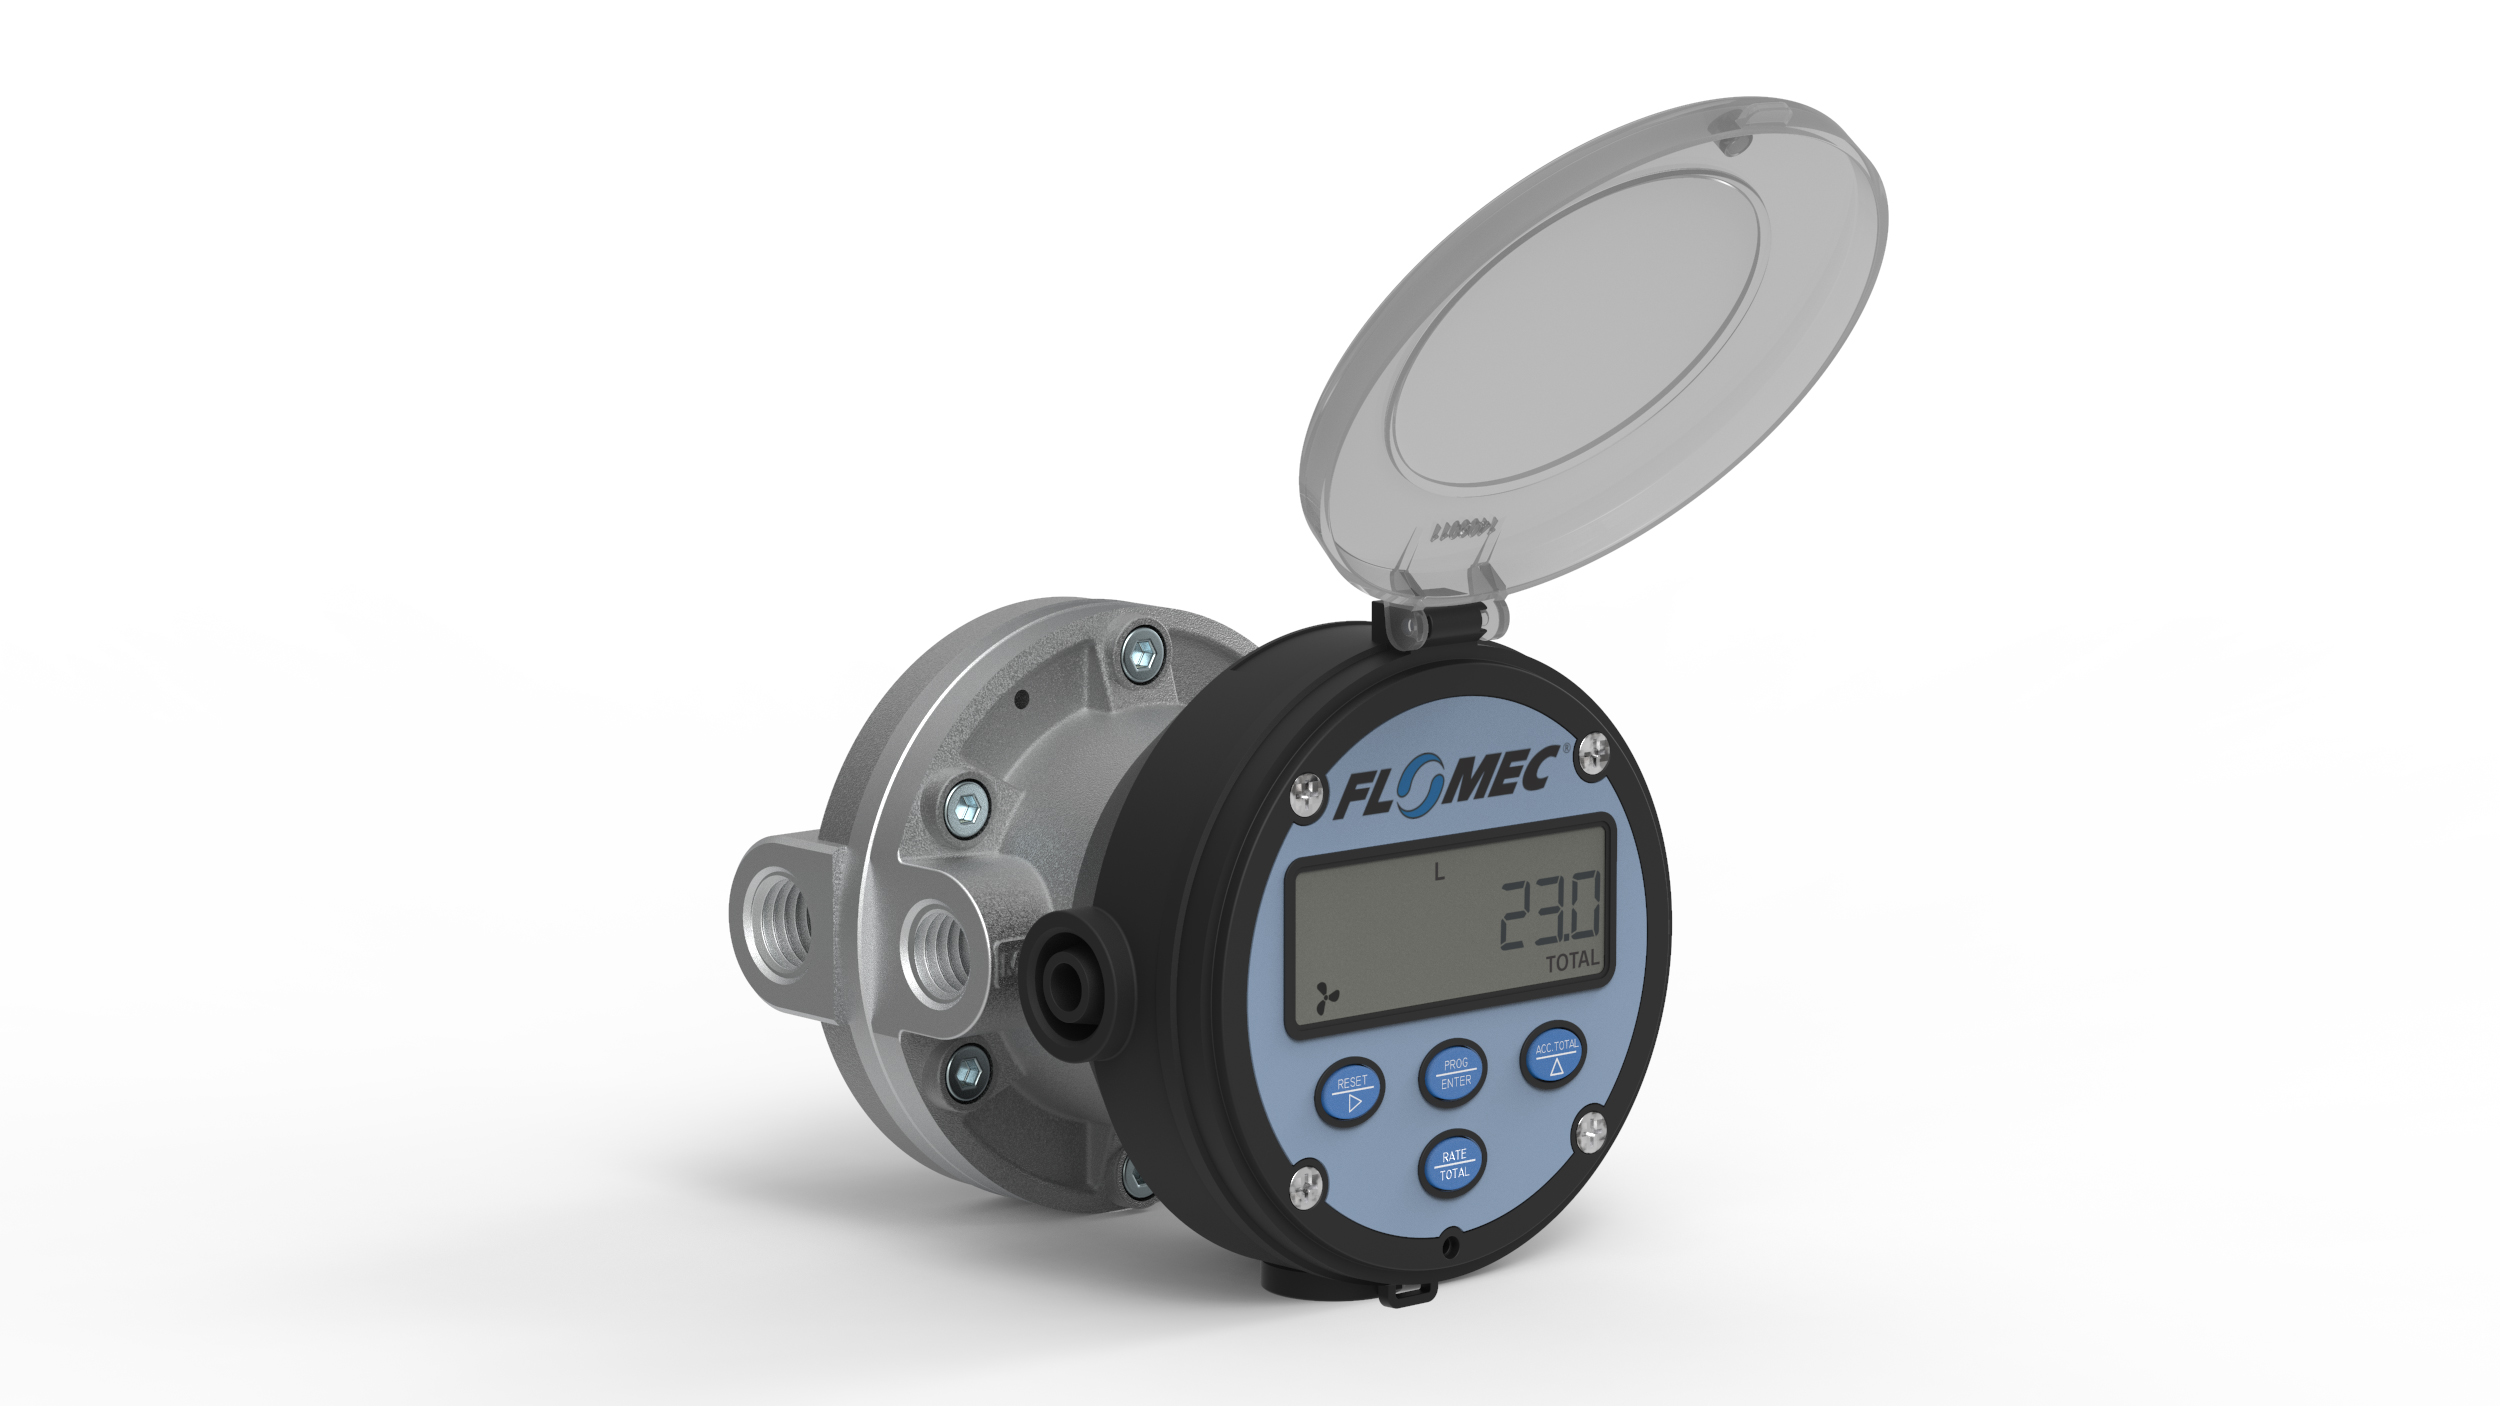 OM-medium oválkerekes áramlásmérő